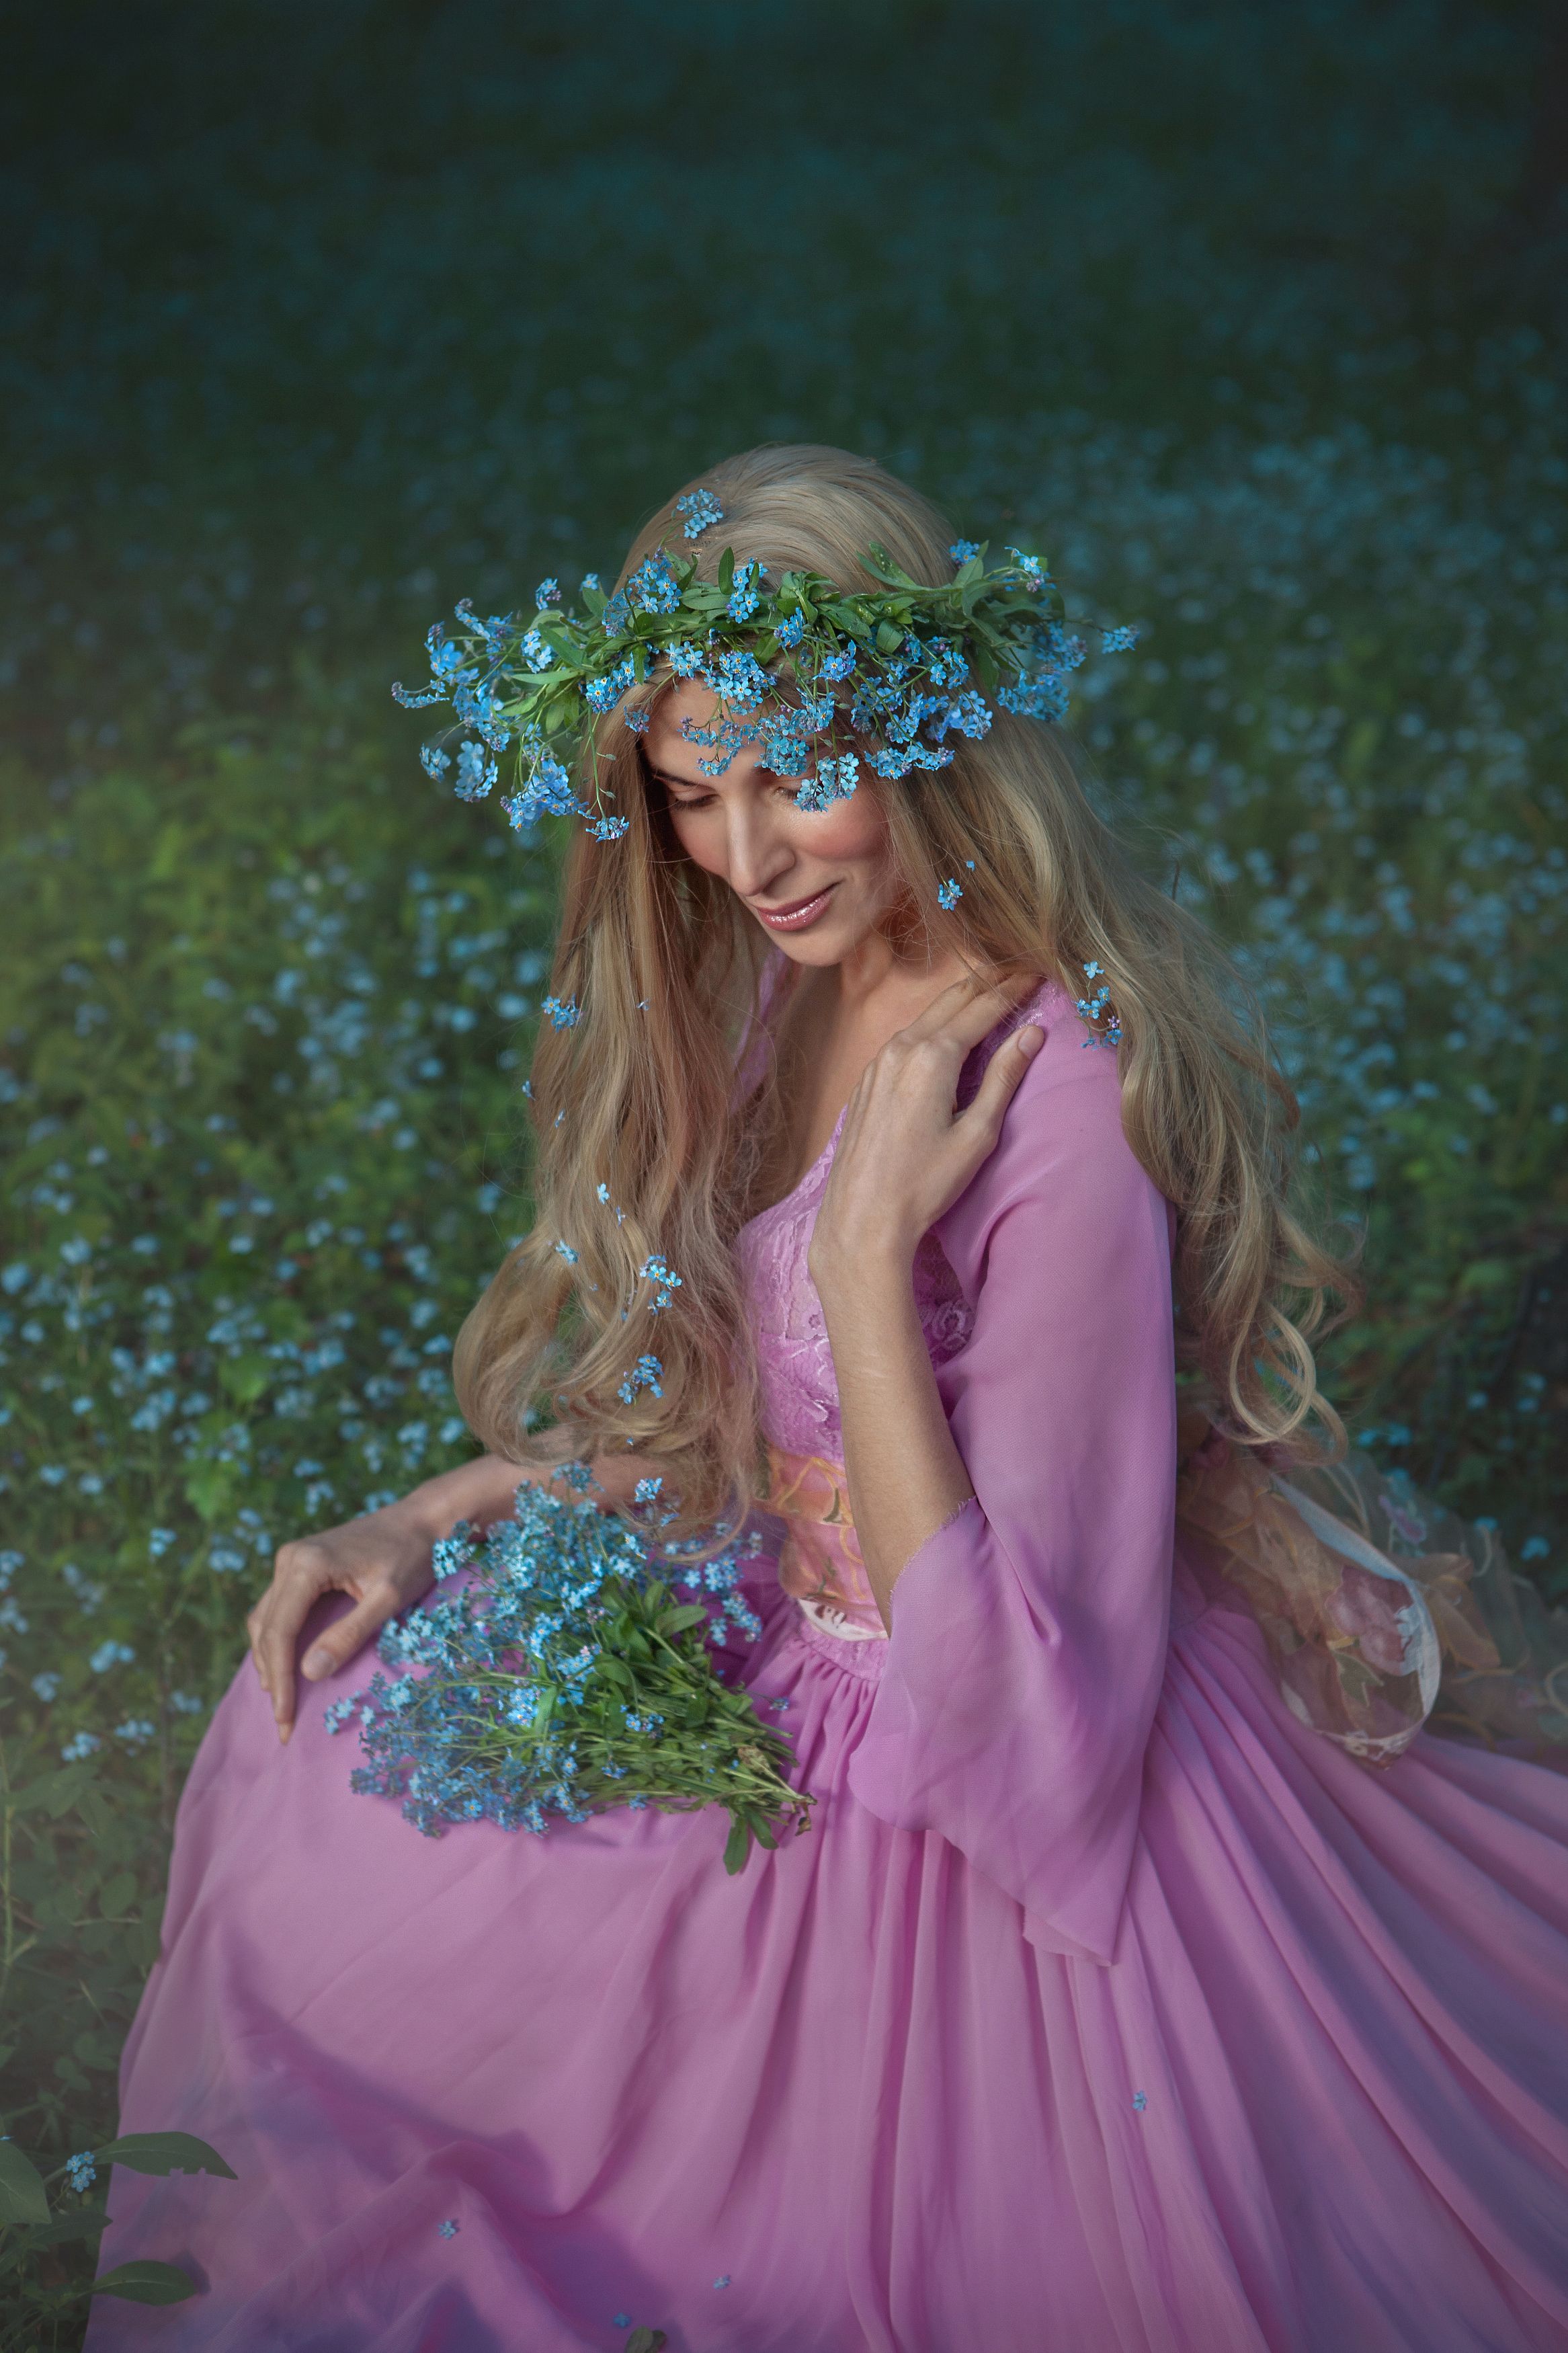 девушка цветы поле любовь солнце лето красота счастье мечты красавица фотография, Татьяна Шепелева